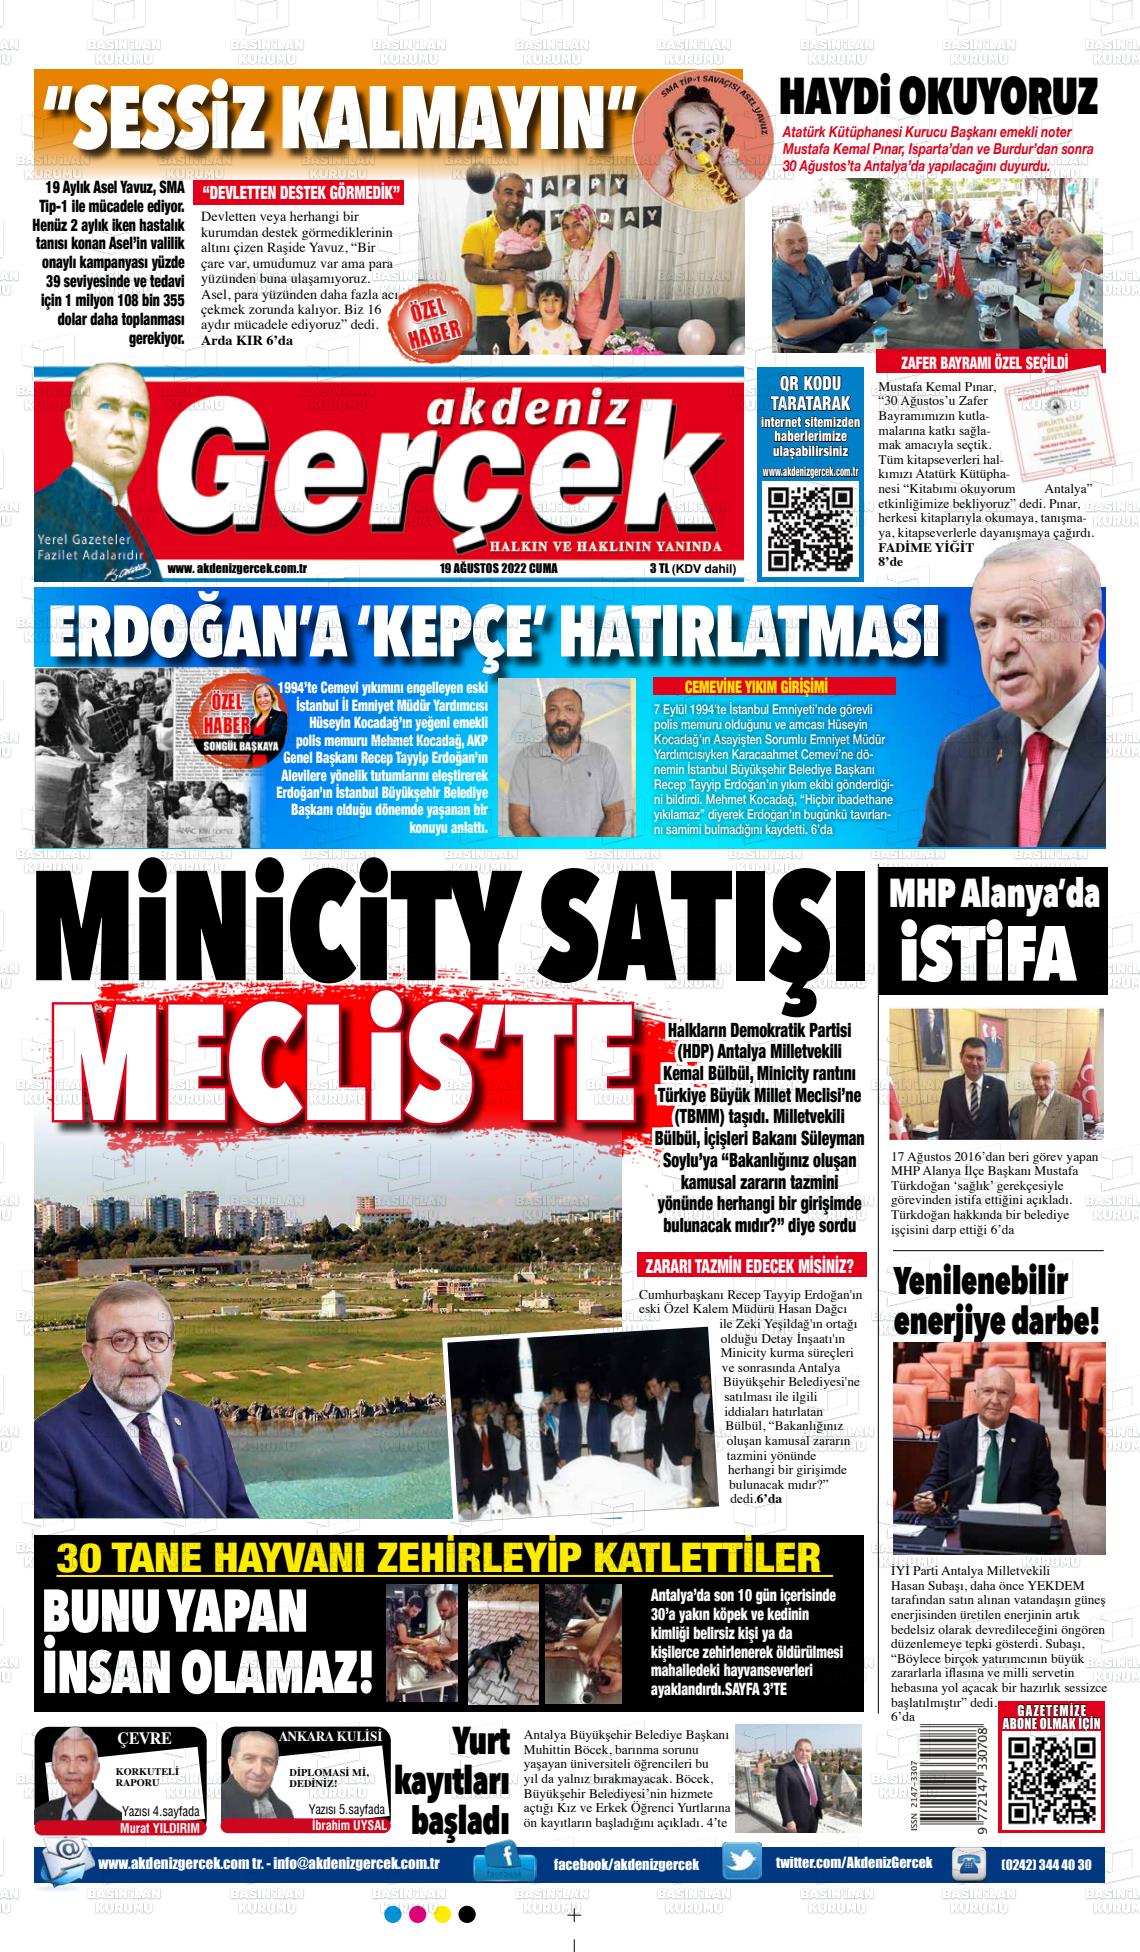 19 Ağustos 2022 Akdeniz Gerçek Gazete Manşeti